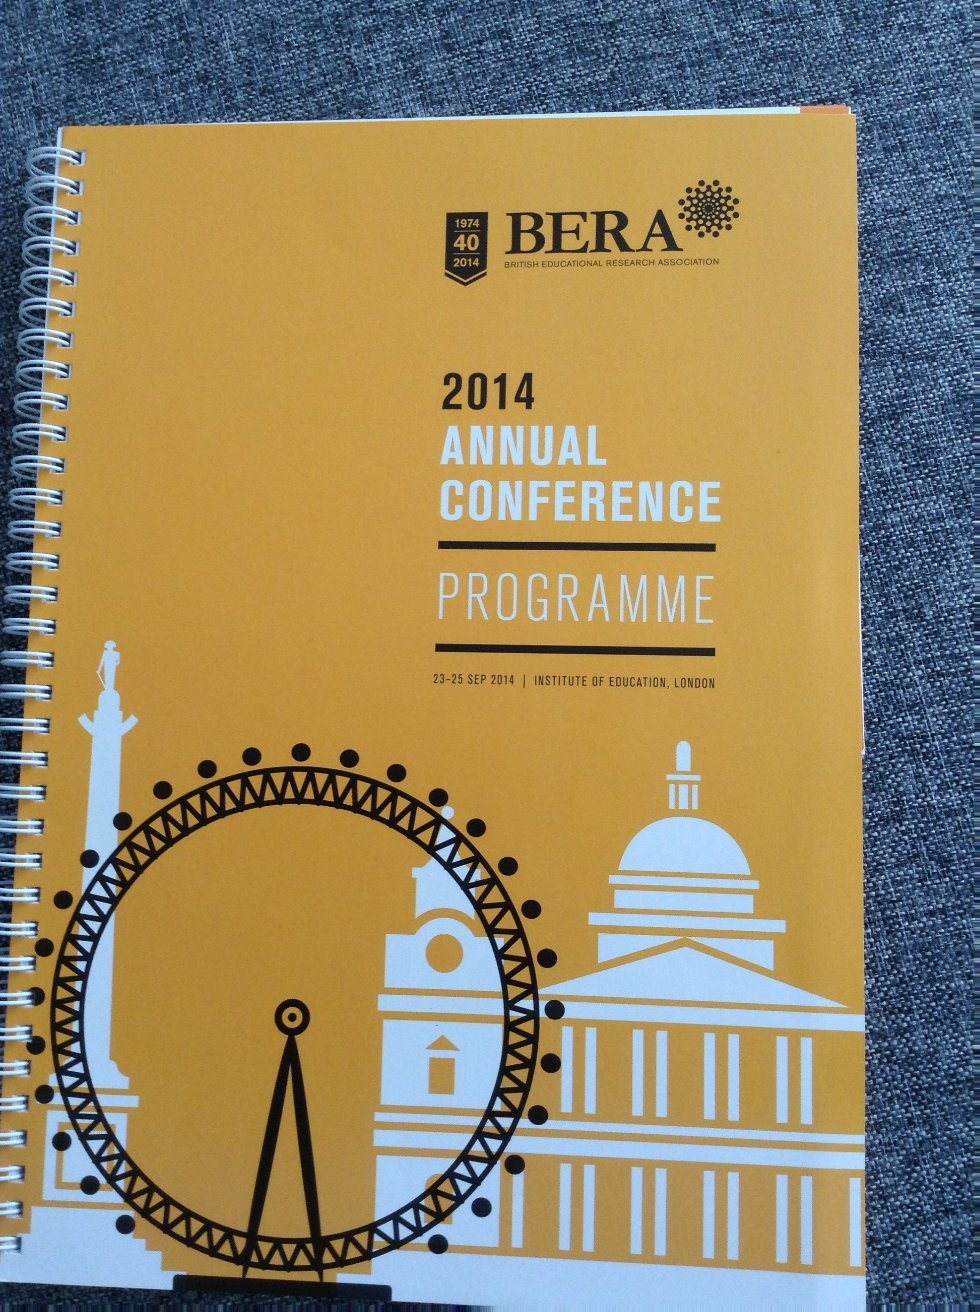 KFU professors at BERA conference in Great Britain